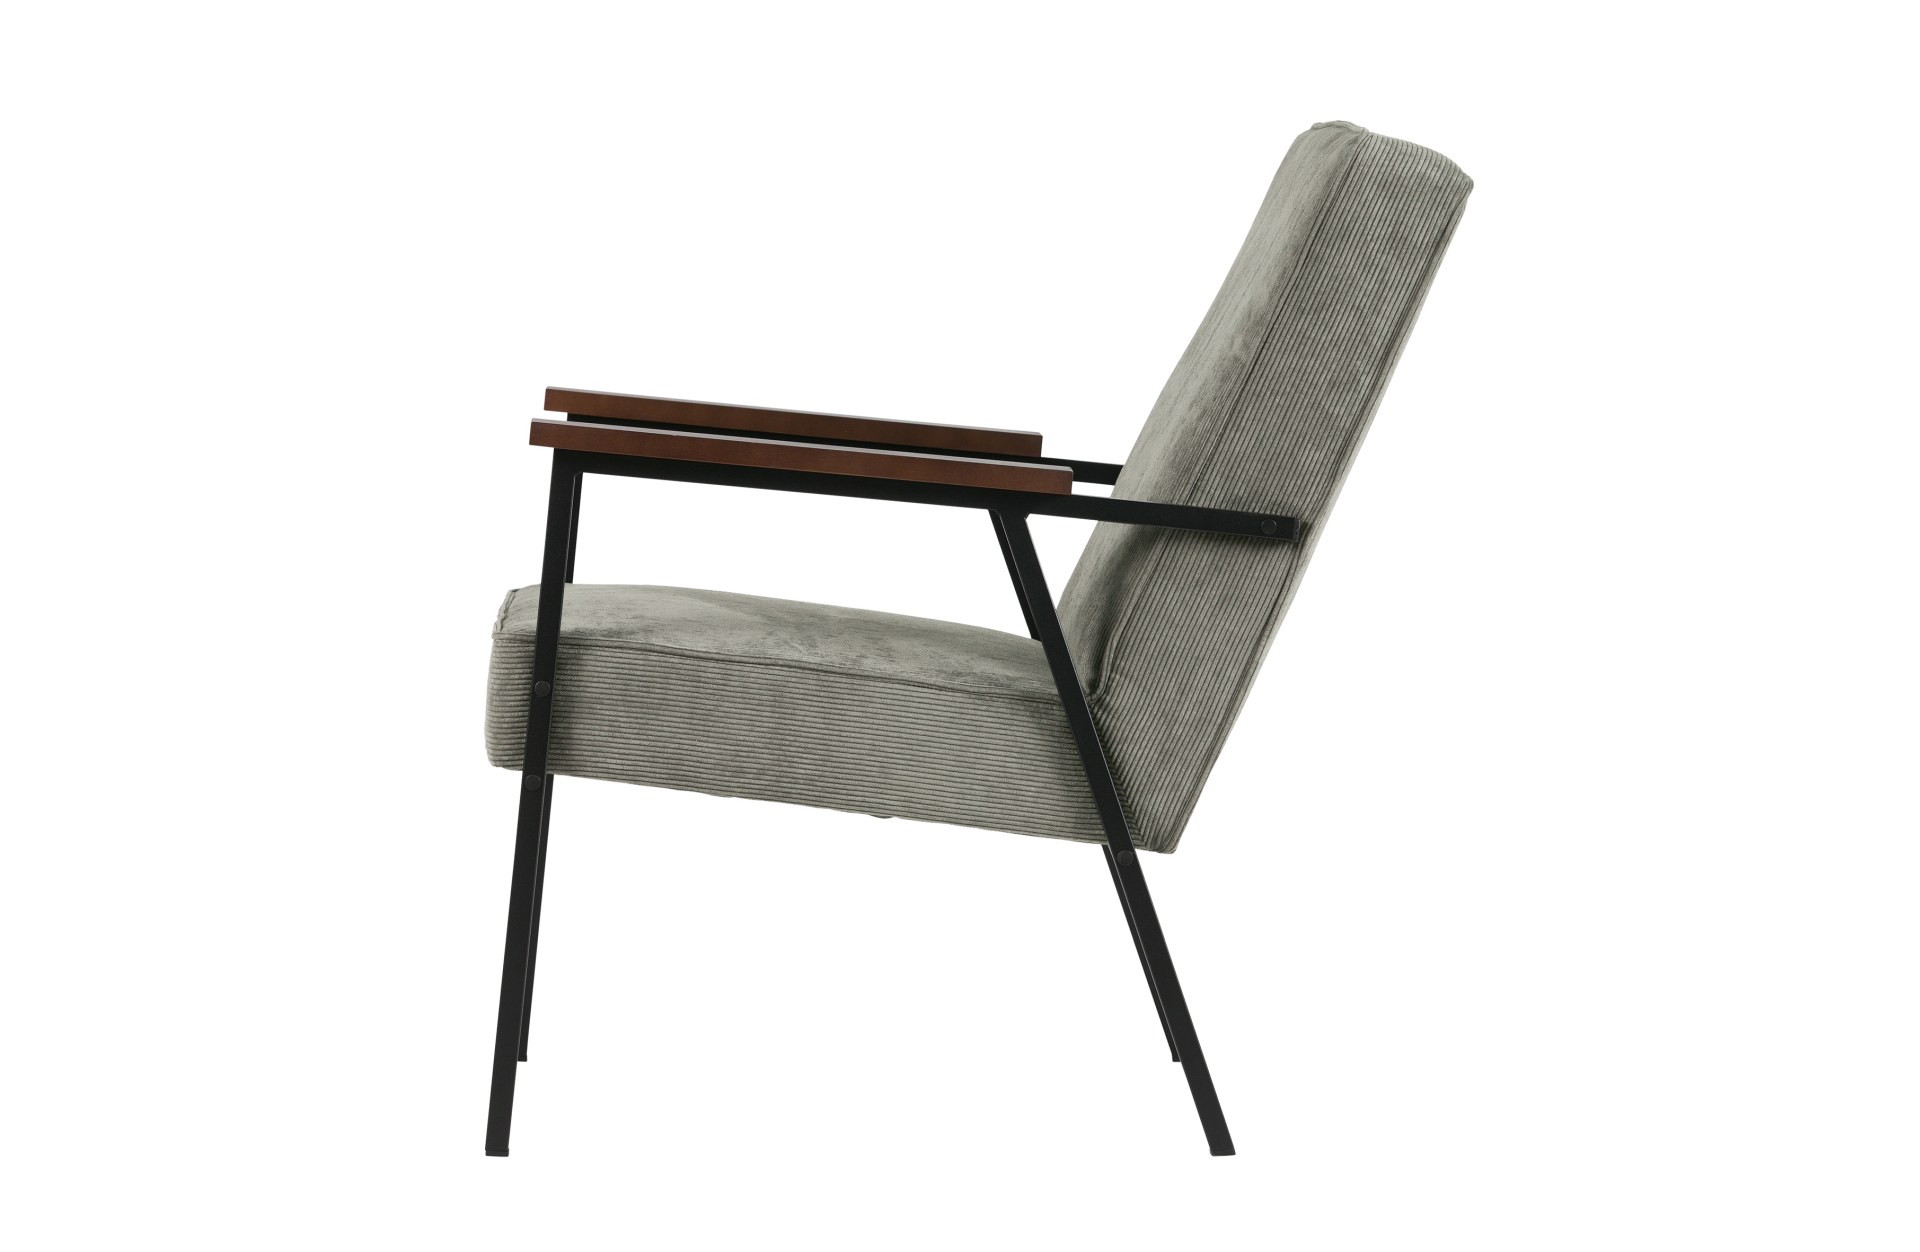 Der Stilvolle Sessel Sally überzeugt mit seinem skandinavisch aber auch modernen Design. Gefertigt wurde der Sessel aus Metall und hat einen Stoffbezug in Cord-Optik. Die zwei Armlehnen sorgen für einen bequemes Sitzen. Der Sessel hat die Farbe Grün.